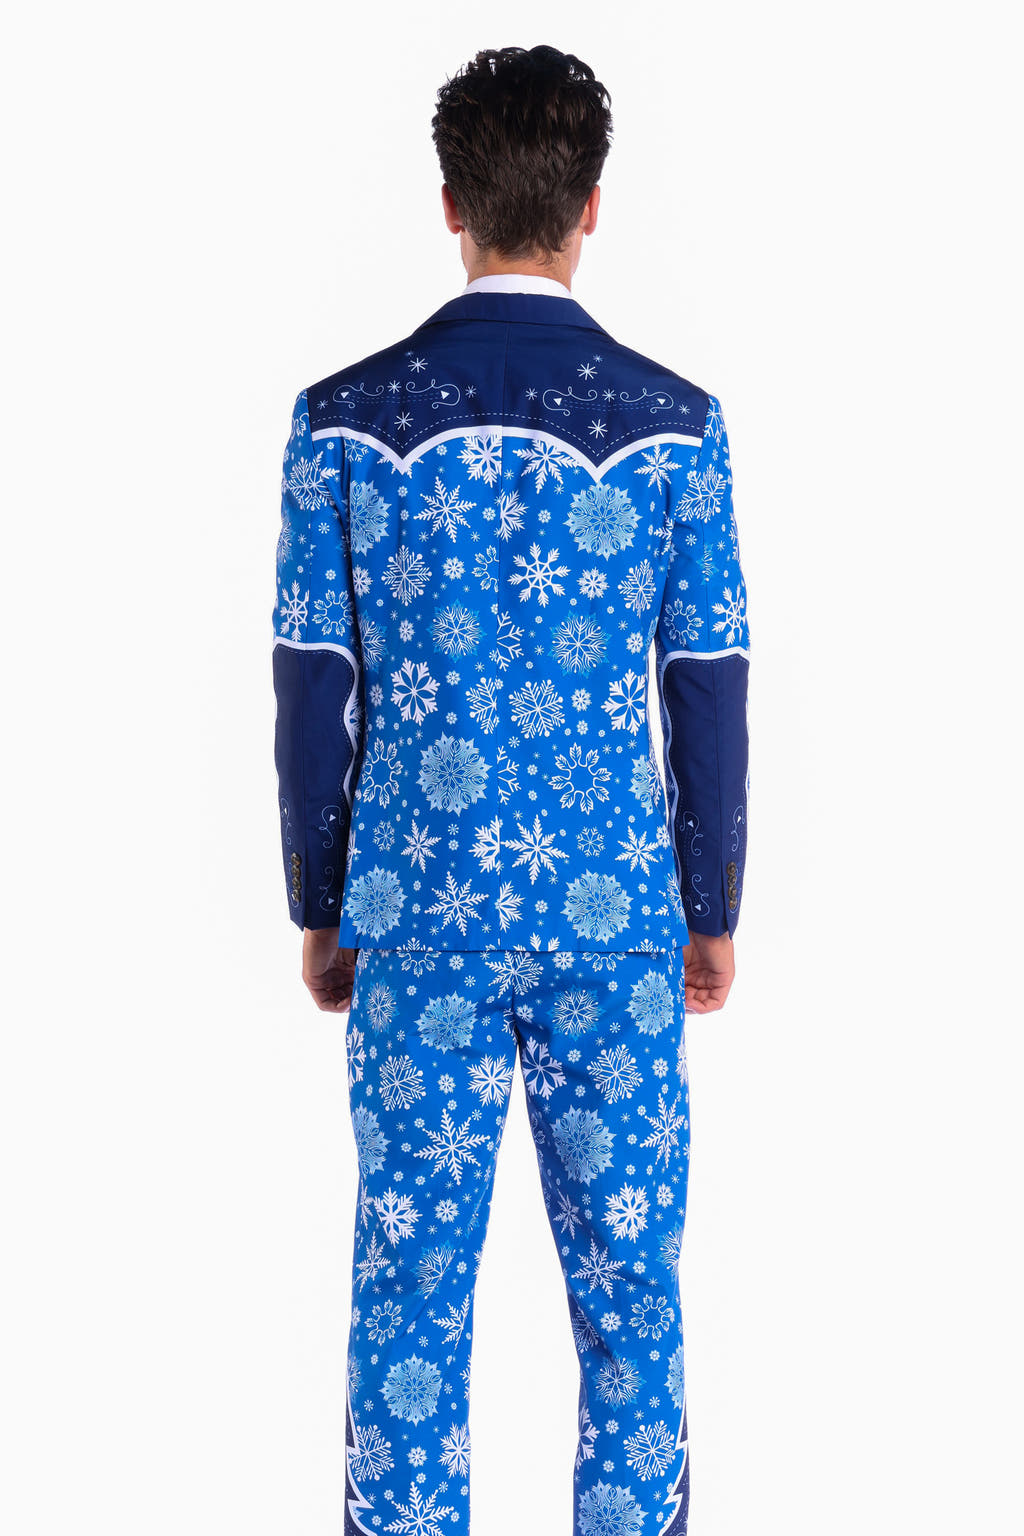 Winter Blue Snowflakes Suit